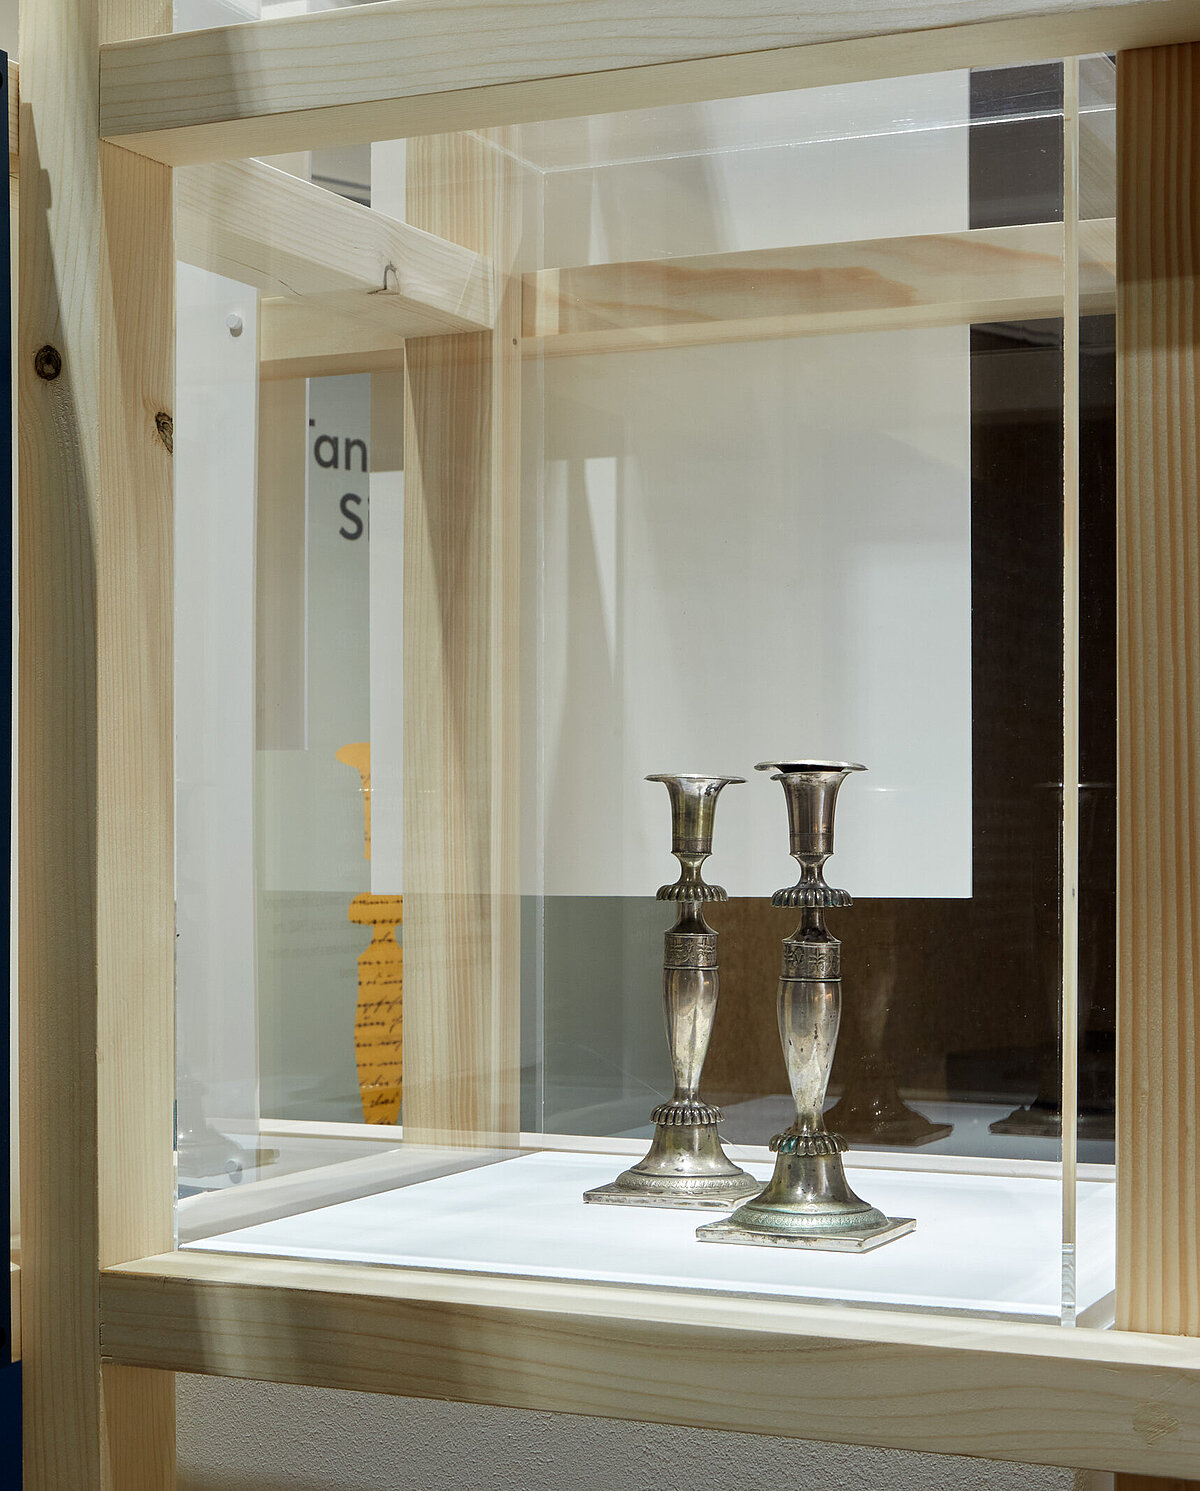 Blick in die Ausstellung "Tante Olgas Silberleuchter", mittig sind in einer Vitrine zwei silberne Leuchter zu sehen, Foto: Eva Jünger / Jüdisches Museum München